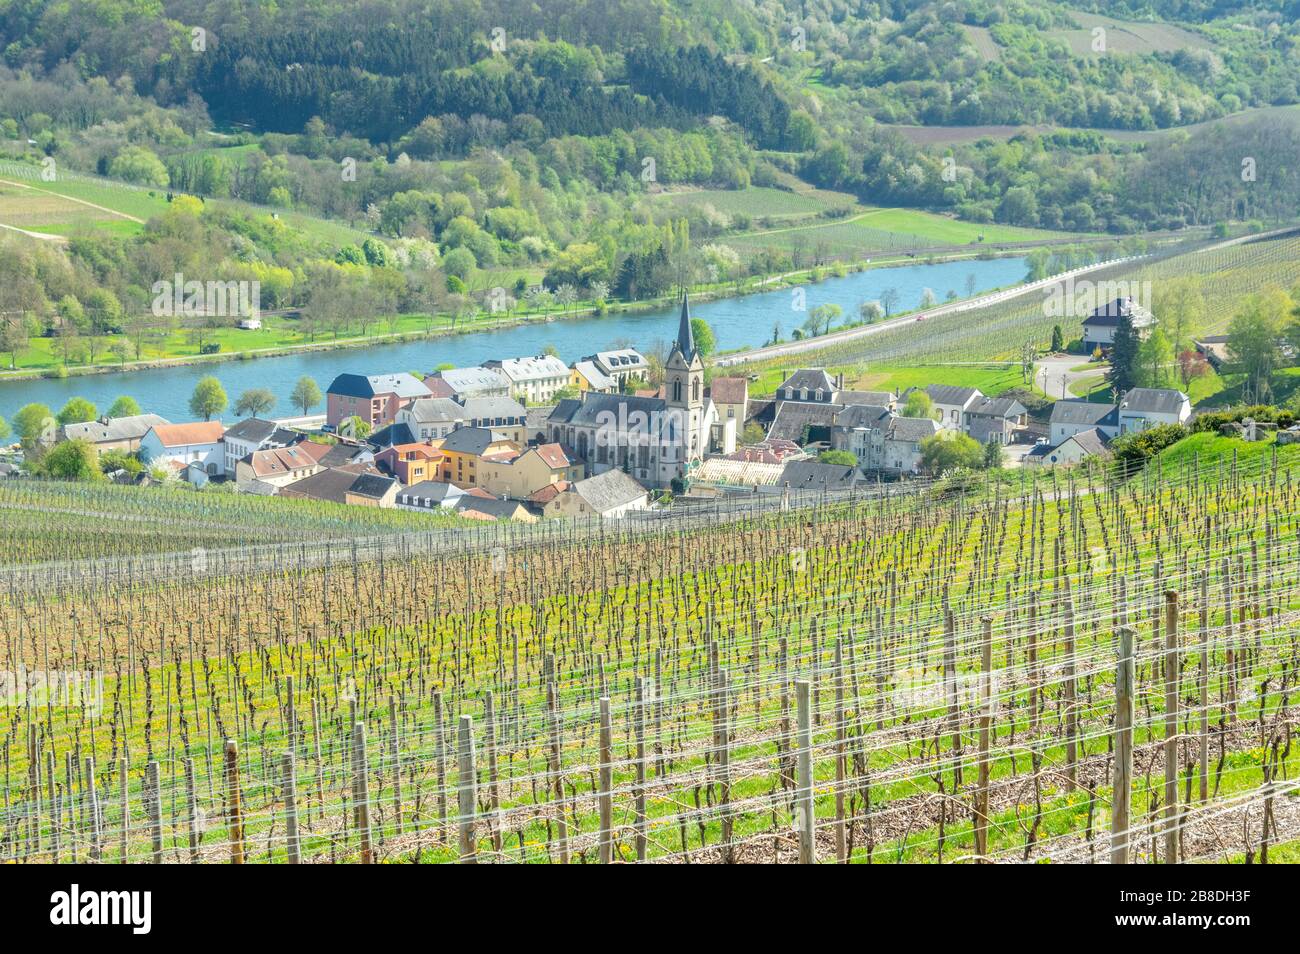 Village d'Ahn ou d'Ehnen niché entre les vignobles de la vallée de la Moselle, région viticole du Luxembourg, avec des champs tout autour Banque D'Images